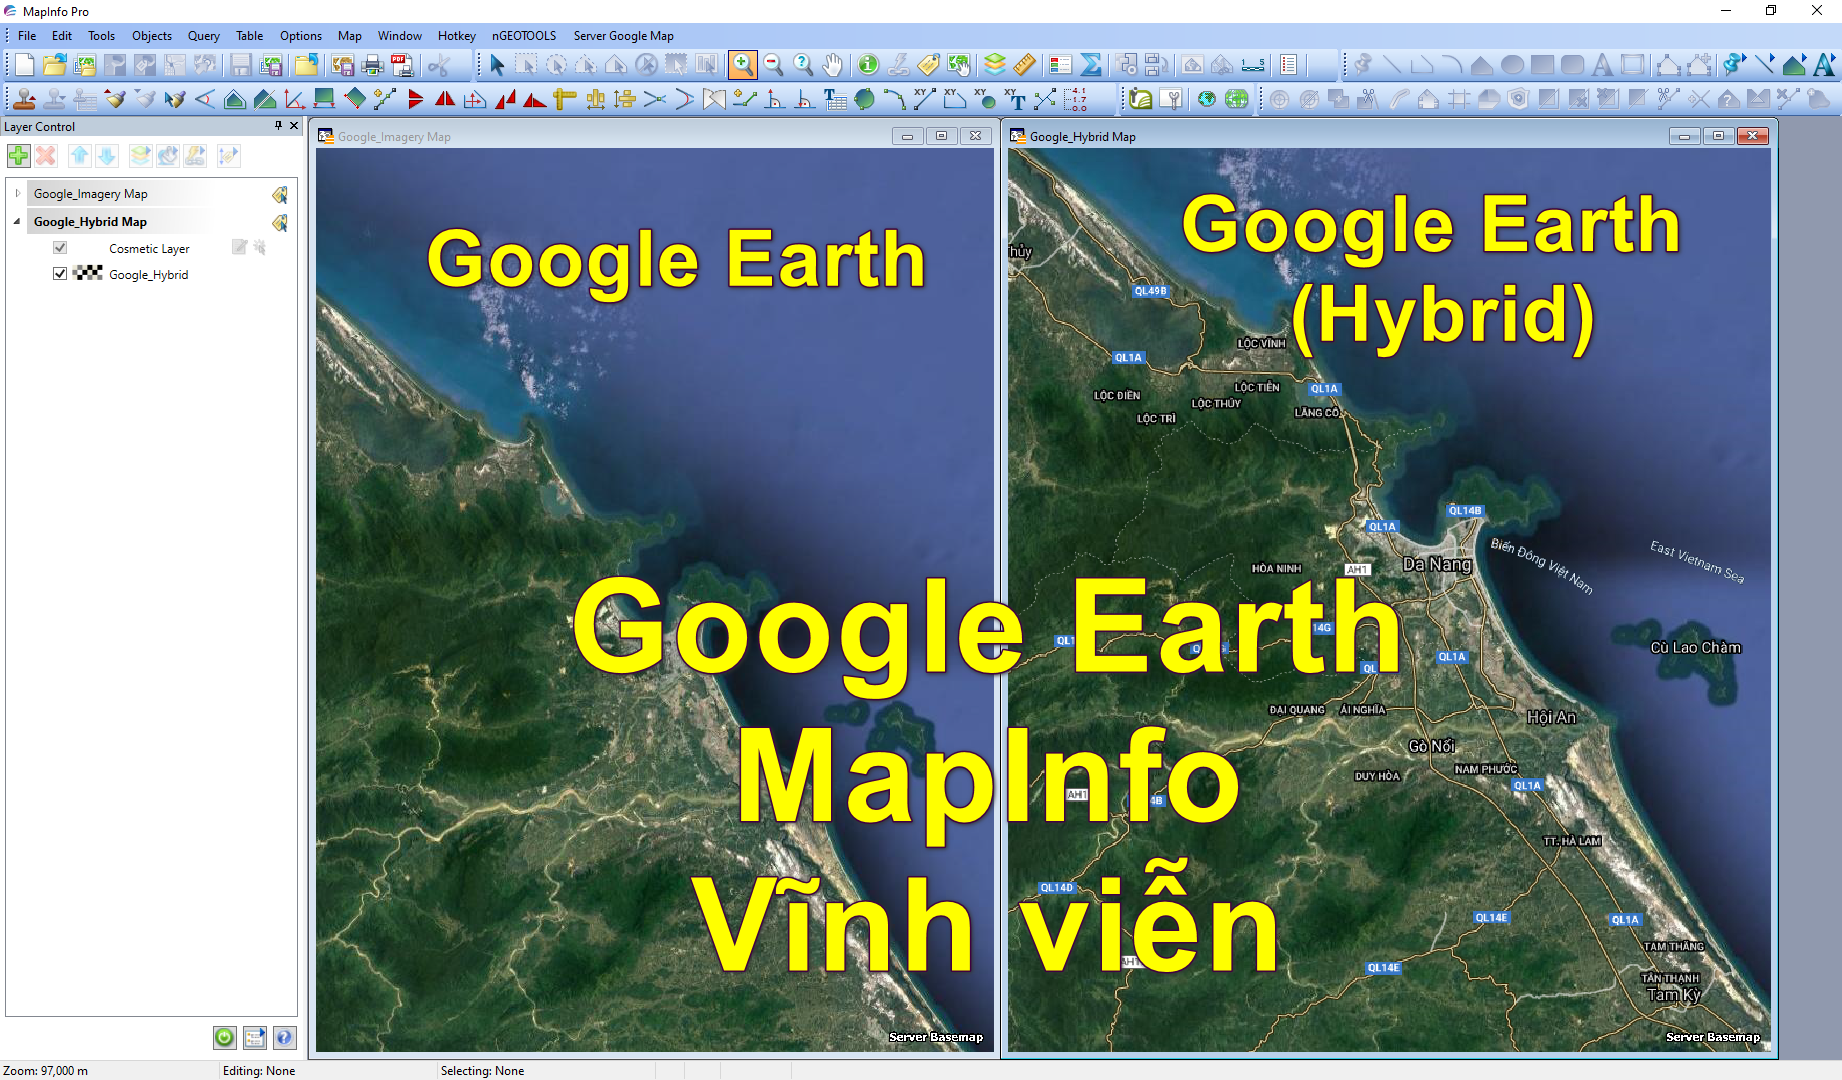 Google Earth cho Mapinfo miễn phí giúp bạn access đến hàng triệu dữ liệu địa lý từ khắp mọi nơi trên thế giới. Tích hợp dữ liệu này vào Mapinfo của bạn và tìm được những thông tin cần thiết để lập kế hoạch hiệu quả hơn. Hãy truy cập ngay để trải nghiệm!